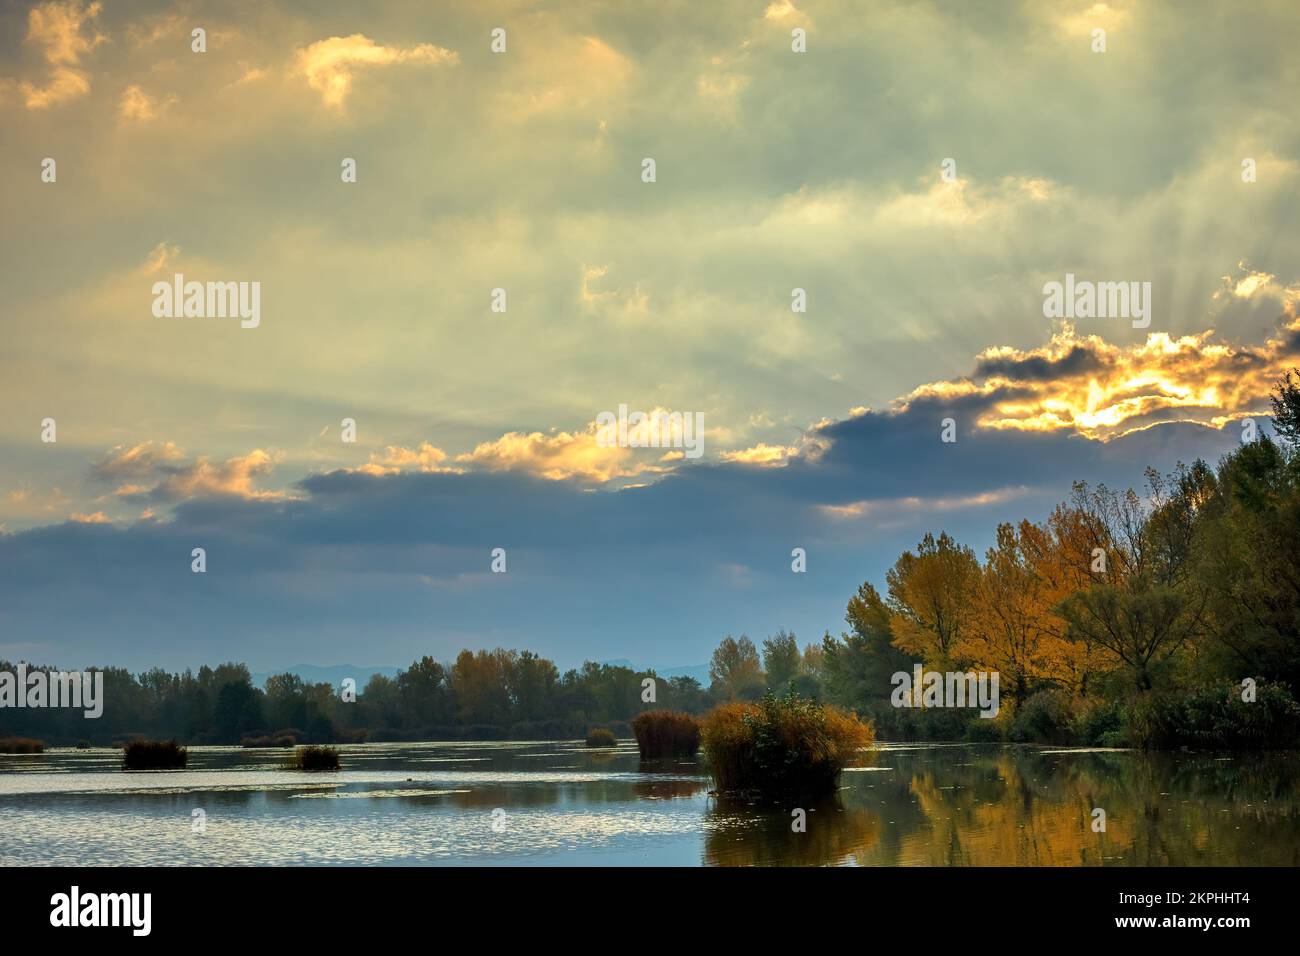 Sonnenaufgang über dem See, Sonne versteckt hinter einer Wolke. Herbstlandschaft. Dubnica, Slowakei. Stockfoto